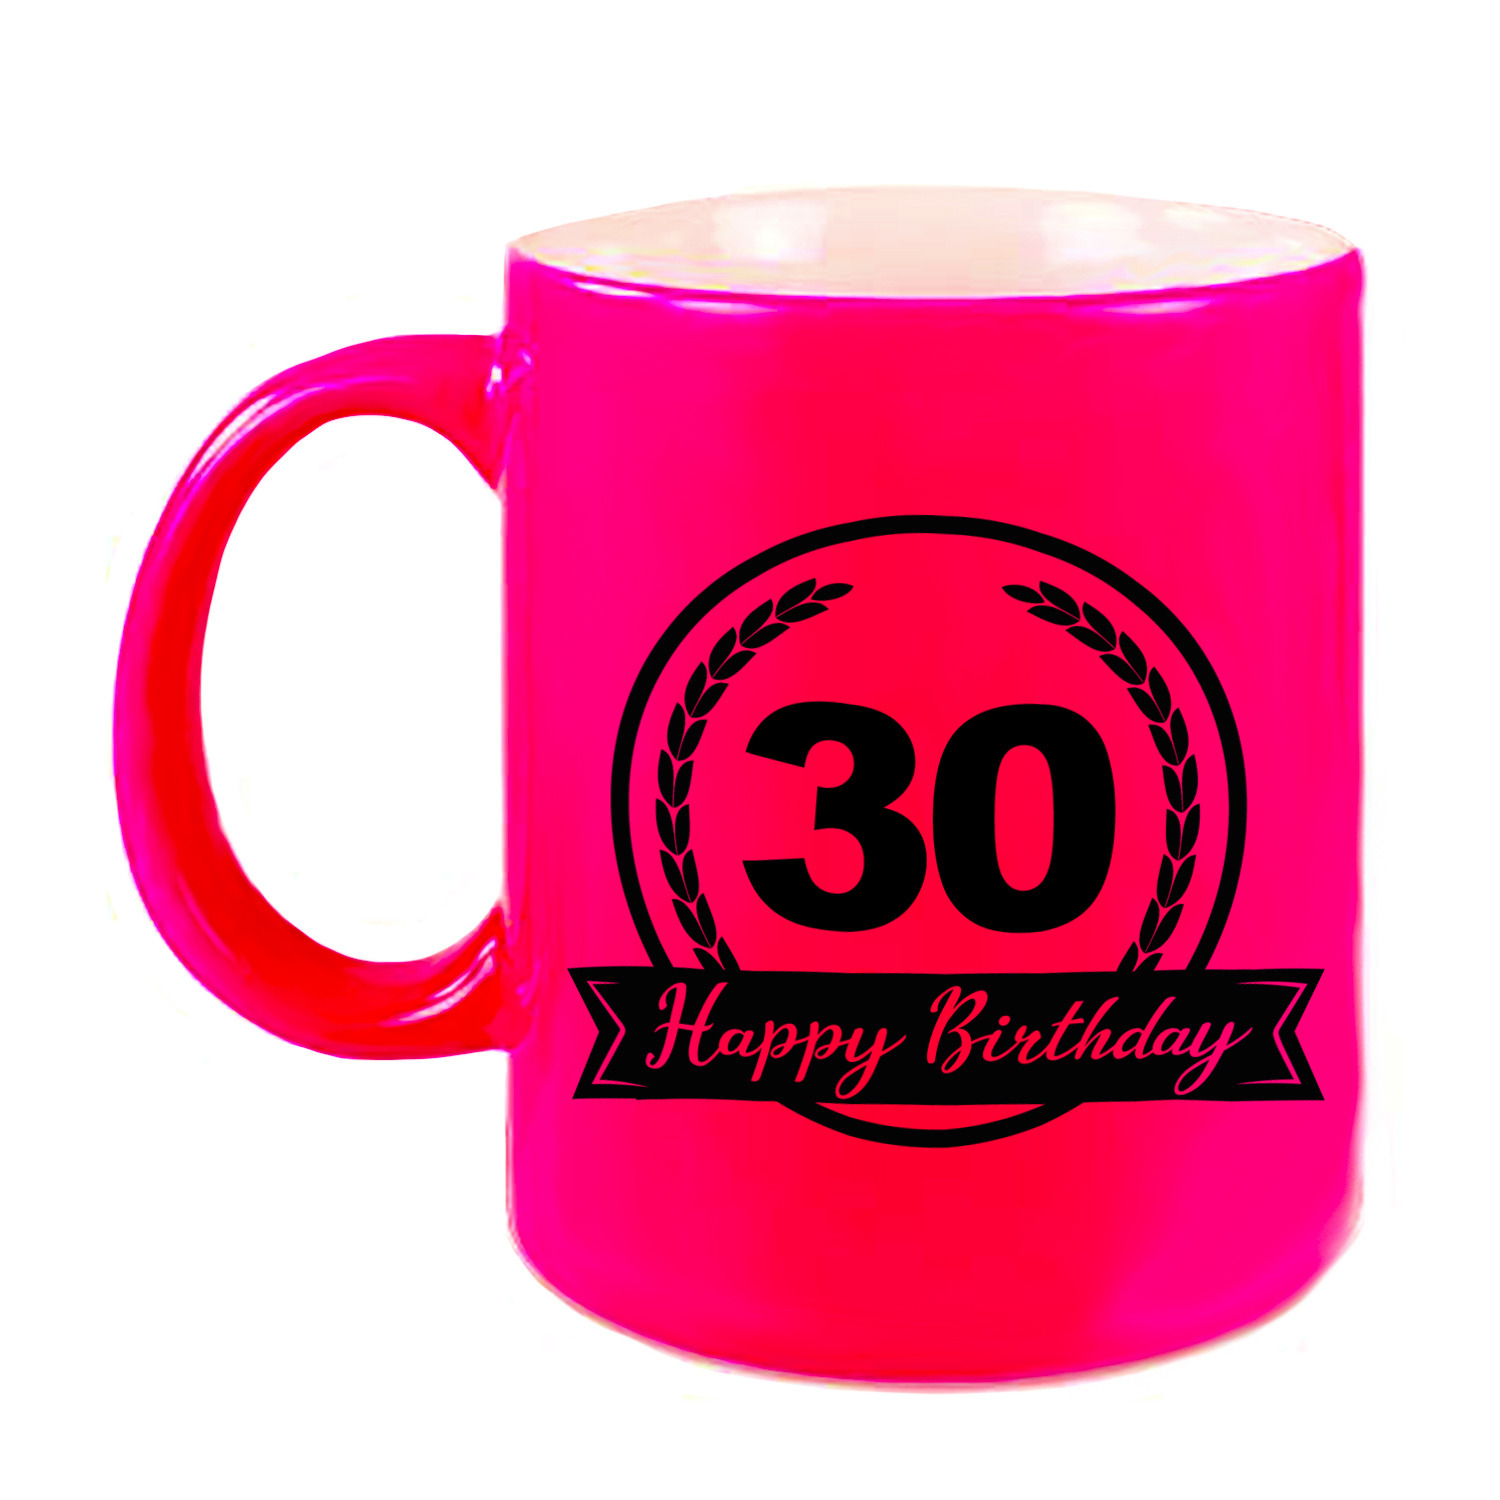 Happy Birthday 30 years cadeau mok-beker neon roze met wimpel 330 ml